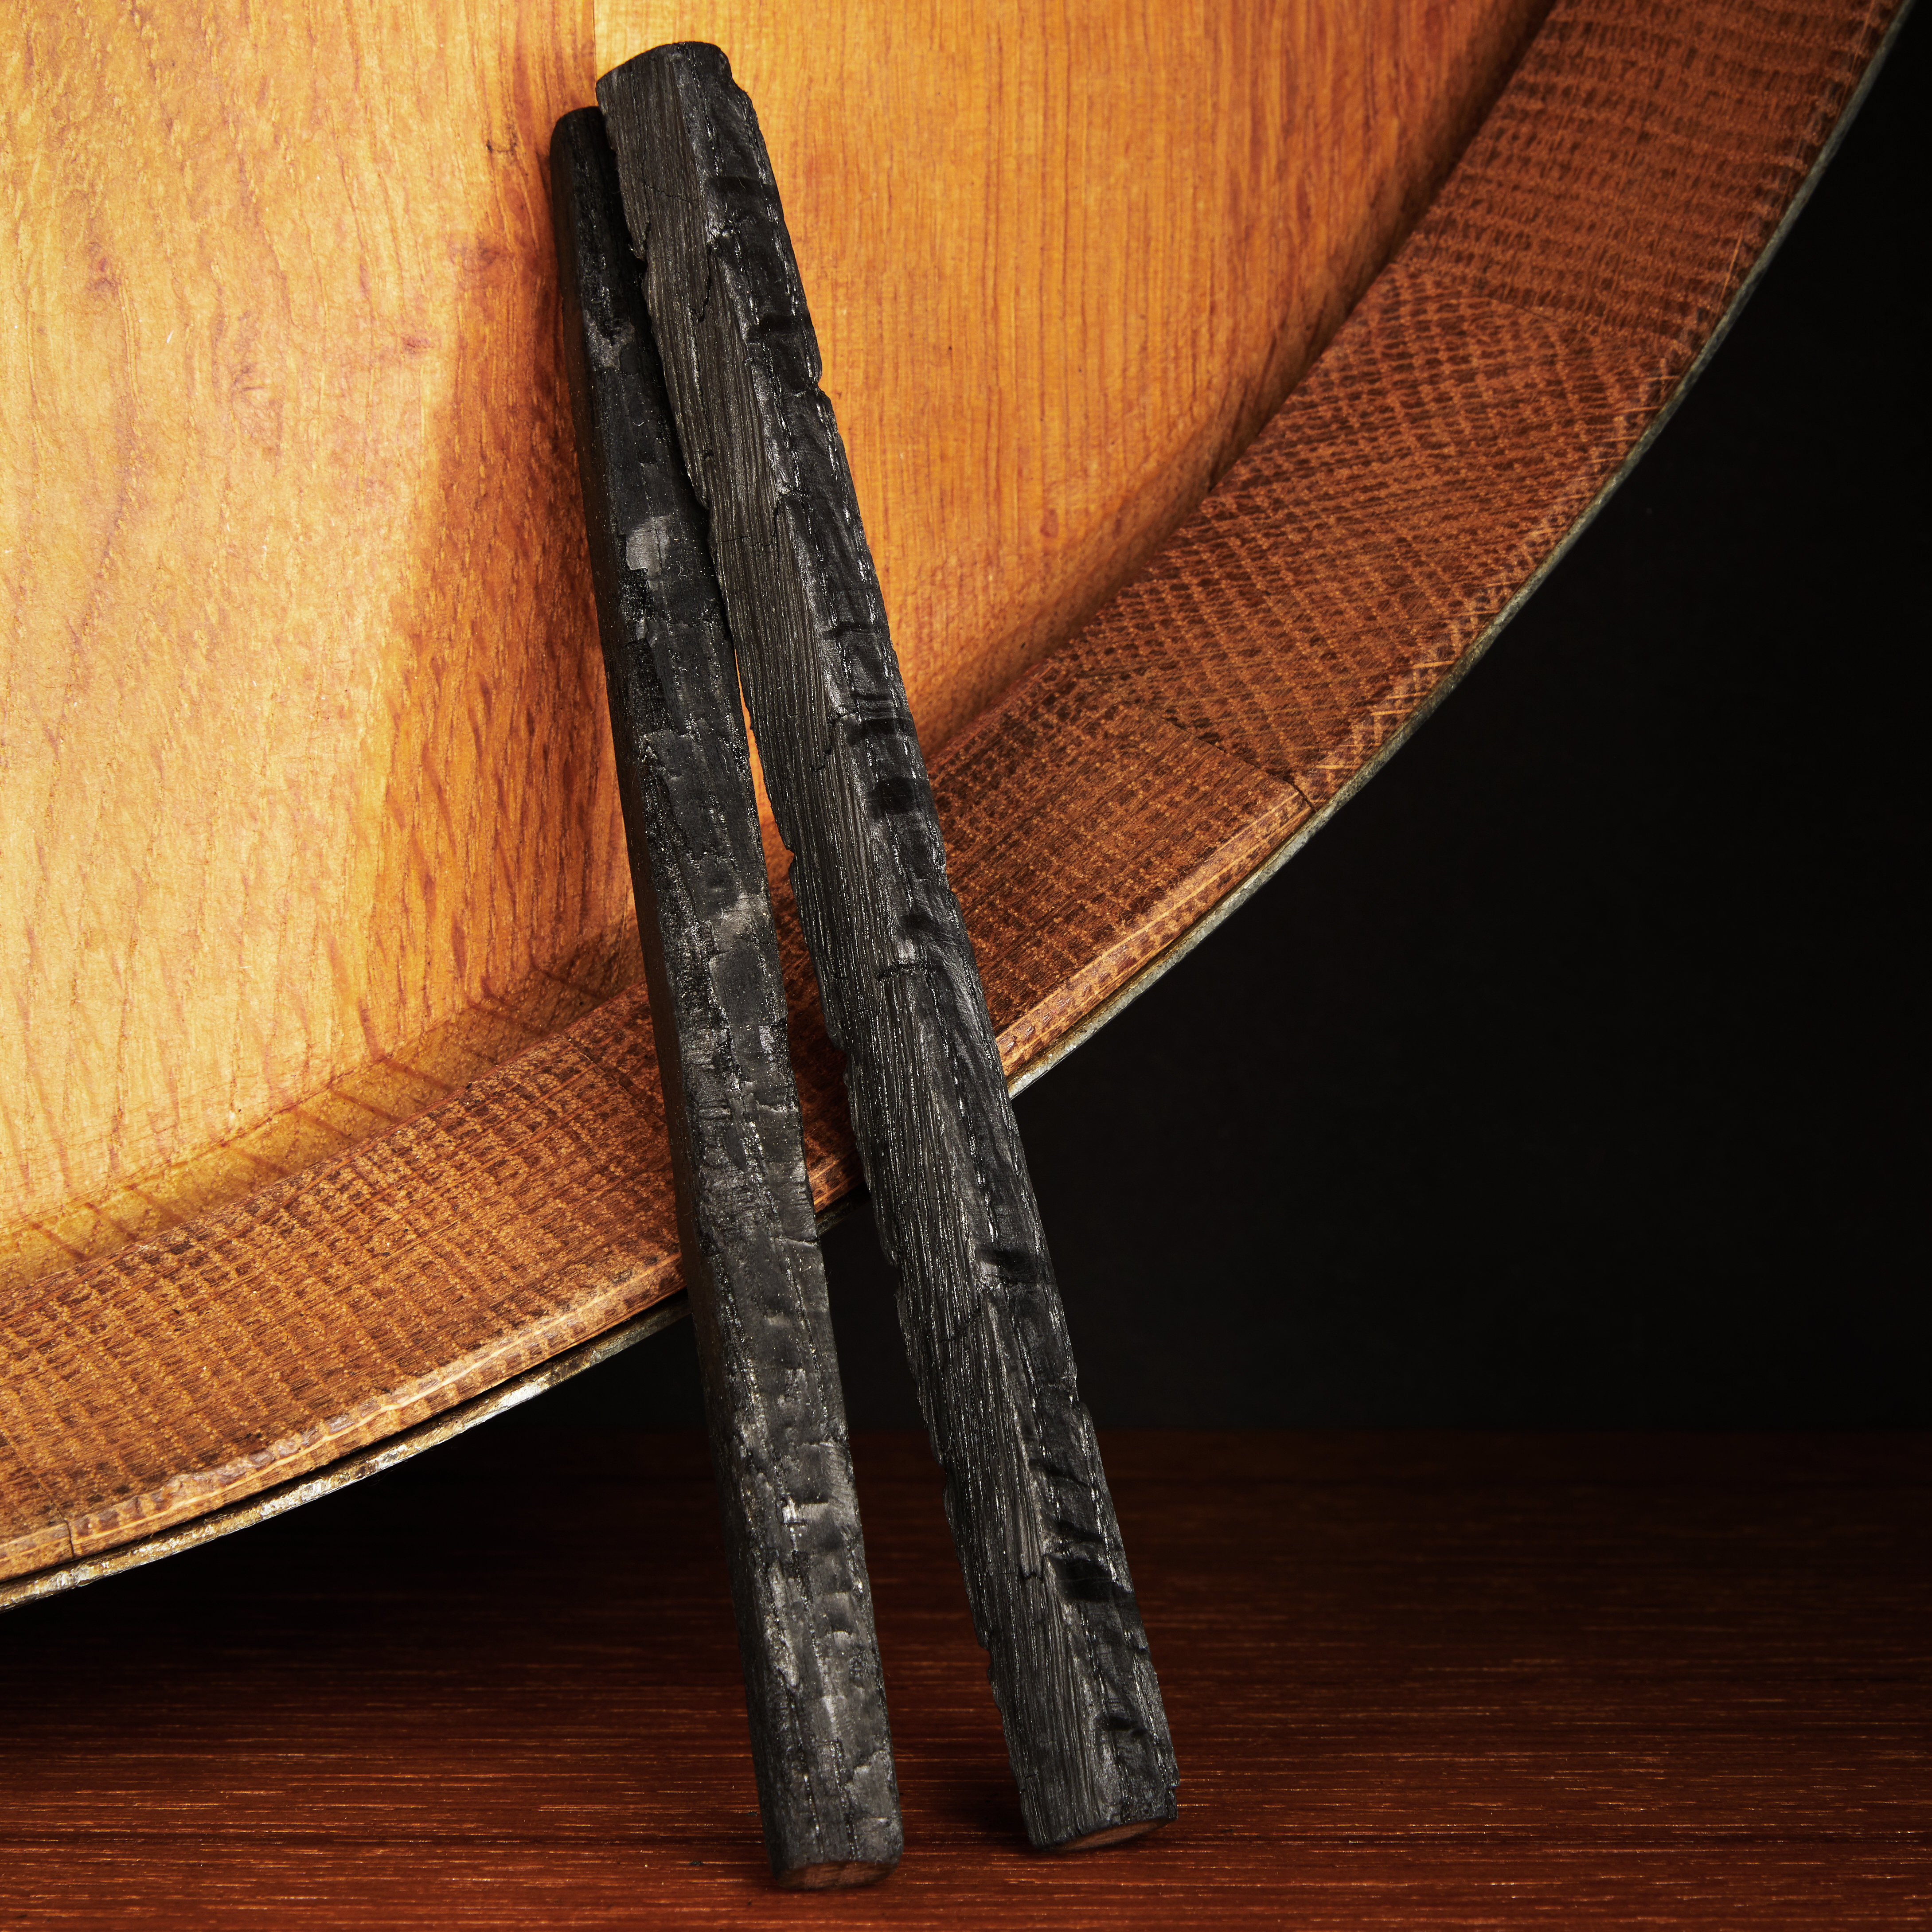 https://assets.wfcdn.com/im/30025409/compr-r85/2245/224580967/viski-liquor-aging-kit-refill-2-charred-oak-wood-sticks-for-aging-whiskey-bourbon-rye.jpg